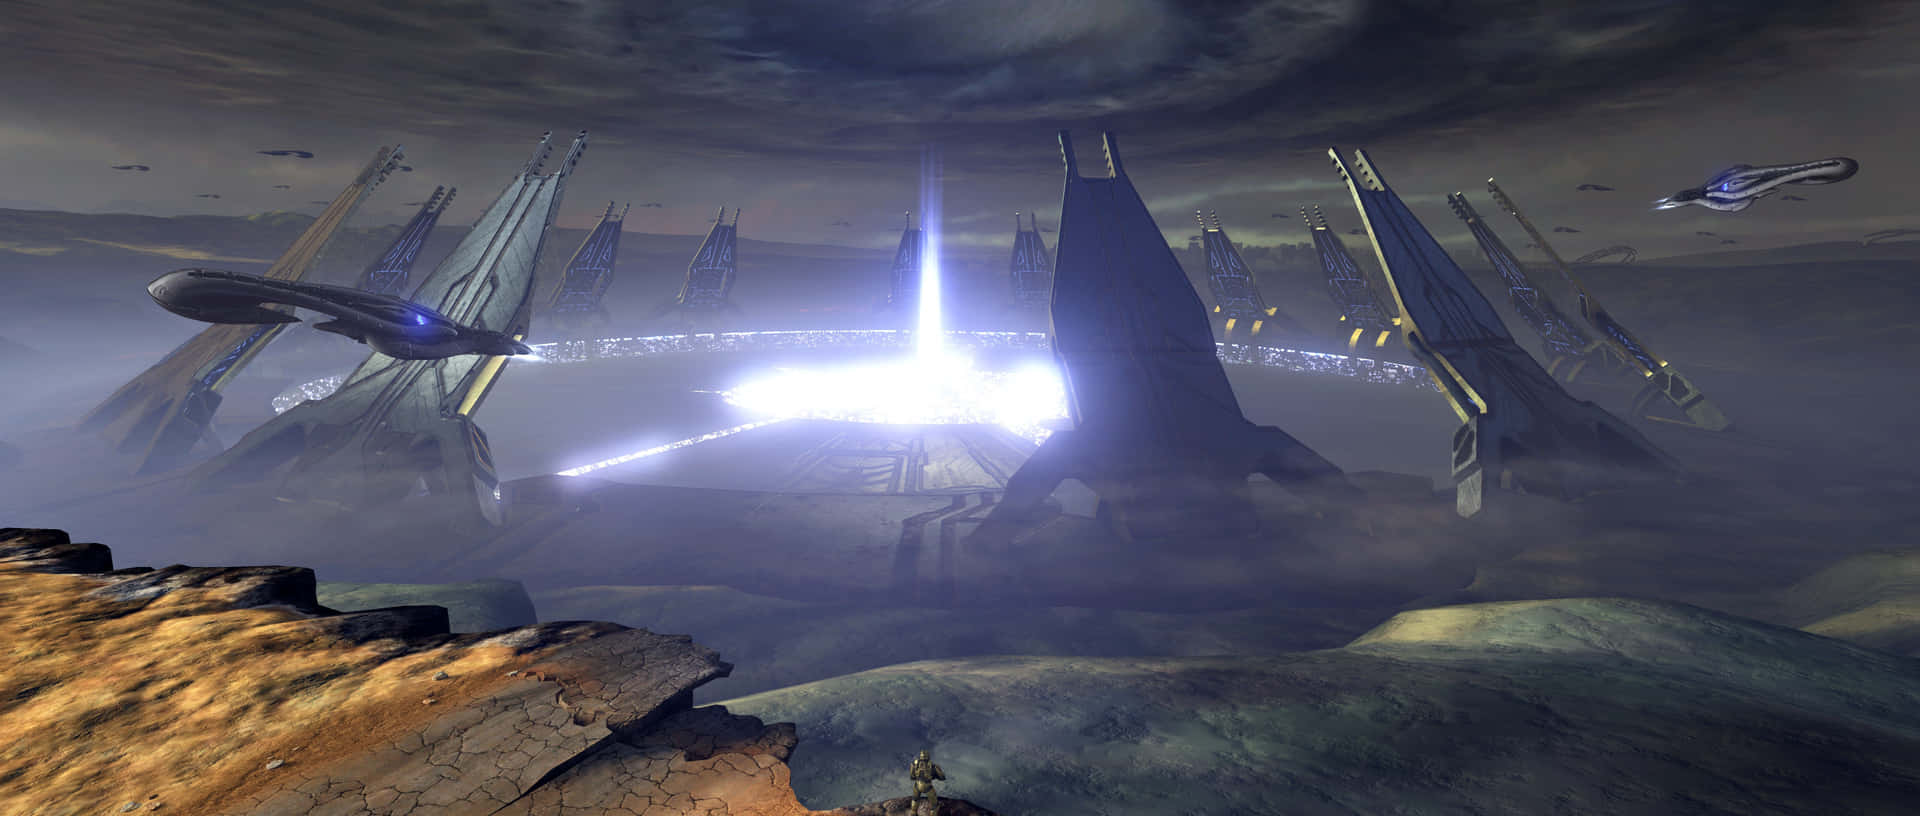 Épicabatalla En El Universo Halo Ark Fondo de pantalla